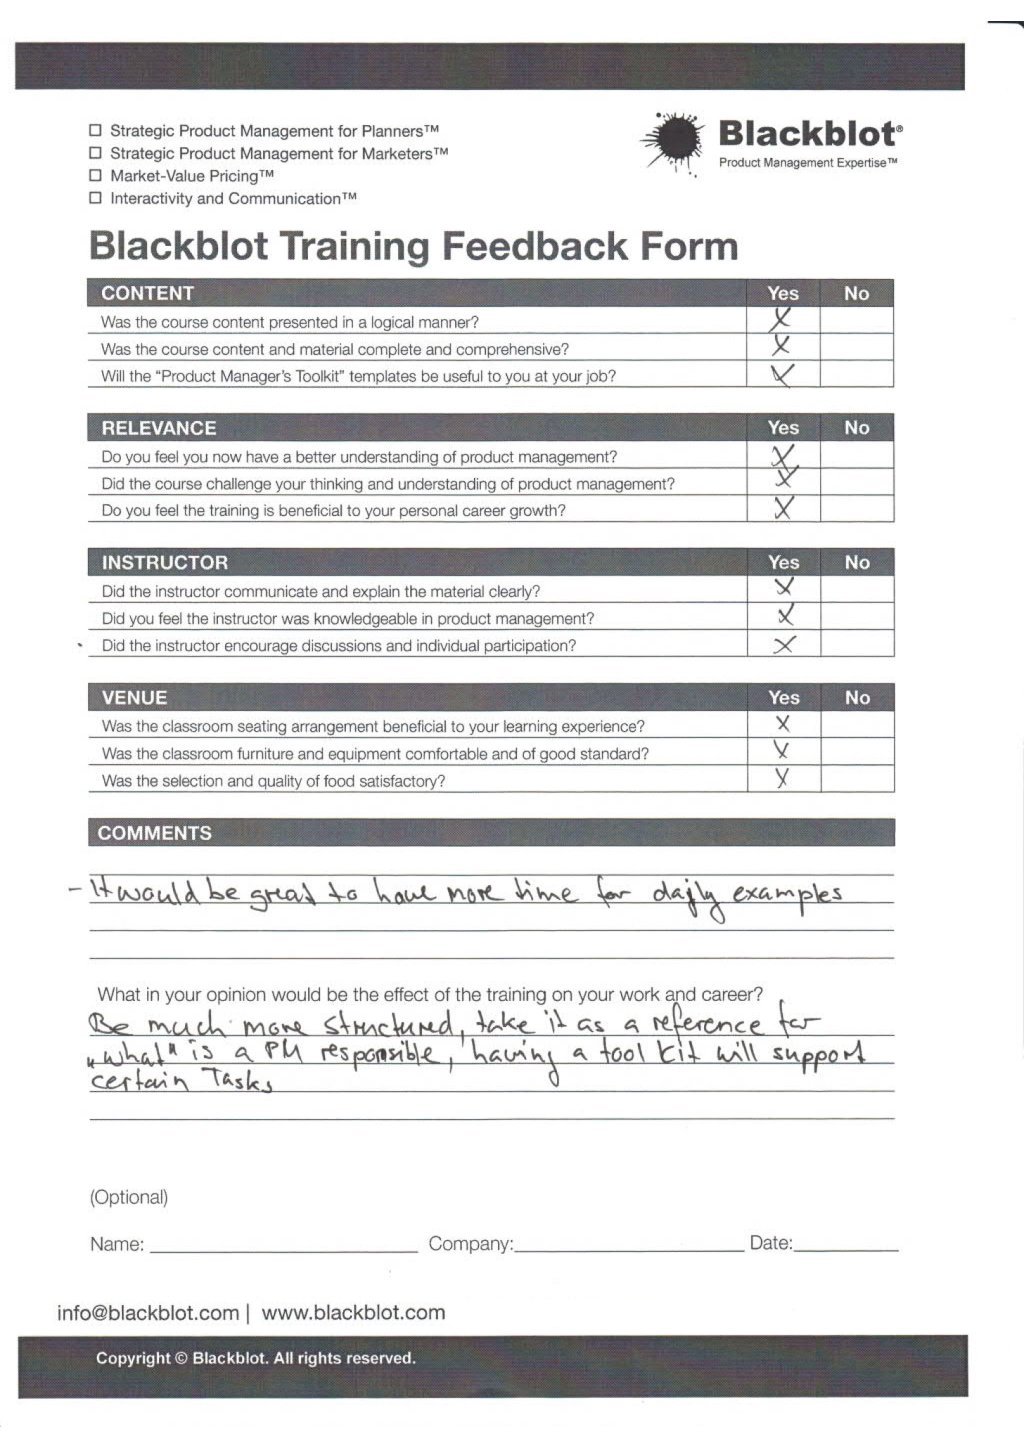 Blackblot: Blackblot_Strategic_Product_Management_Feedback_Form_022.jpg